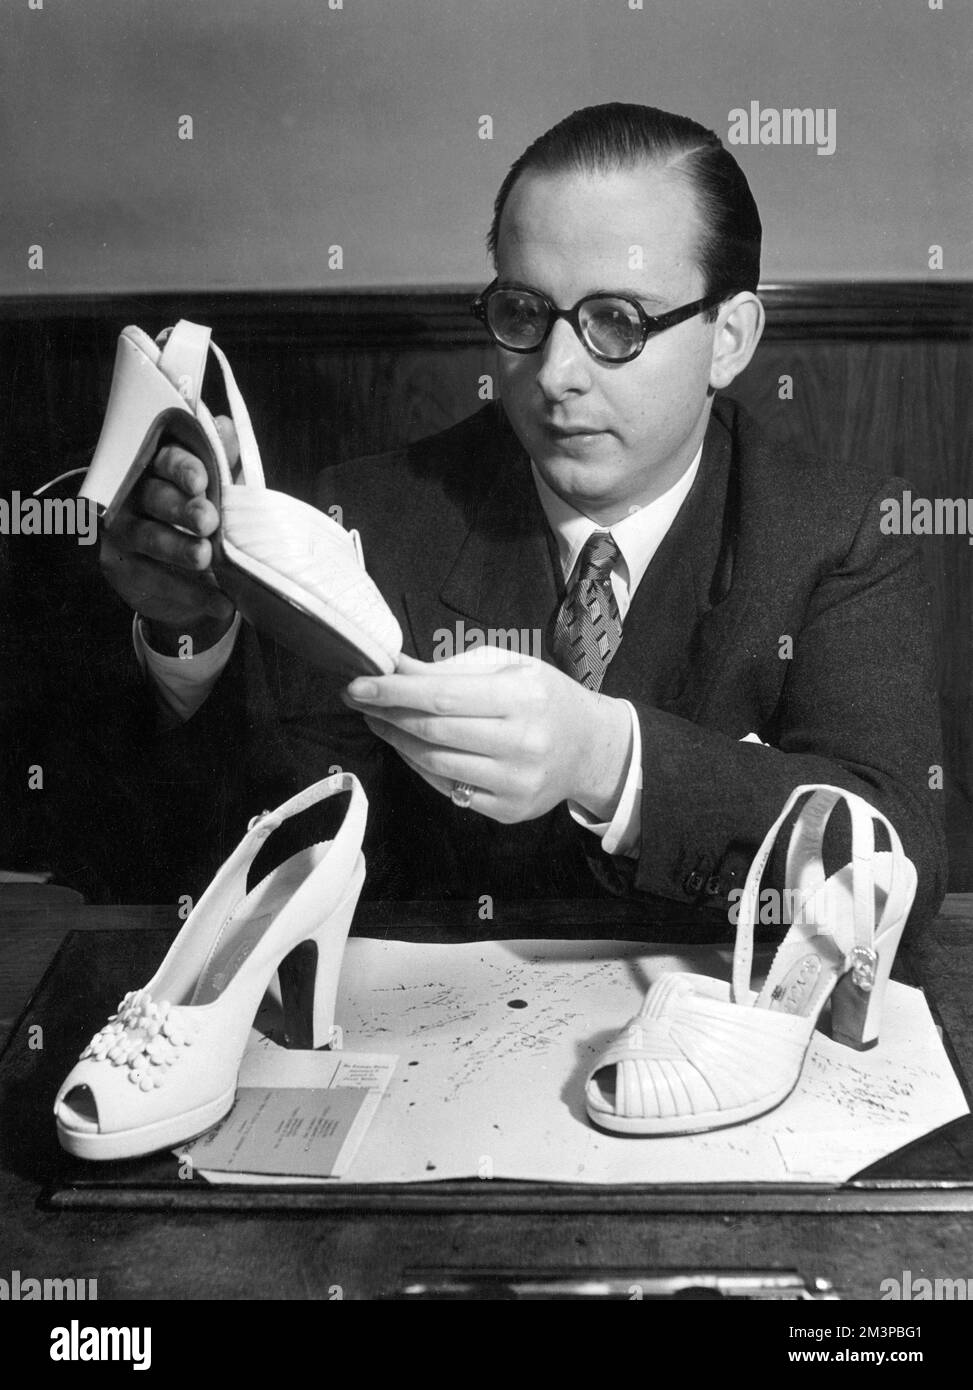 Edward Rayne aus der berühmten Rayne-Schuhdynastie, gegründet von seinen Großeltern im Jahr 1889 und Schuhmachern für Könige, die in den 1950er Jahren ein Paar Schuhe der Firma in Betracht ziehen. Datum: 1952 Stockfoto